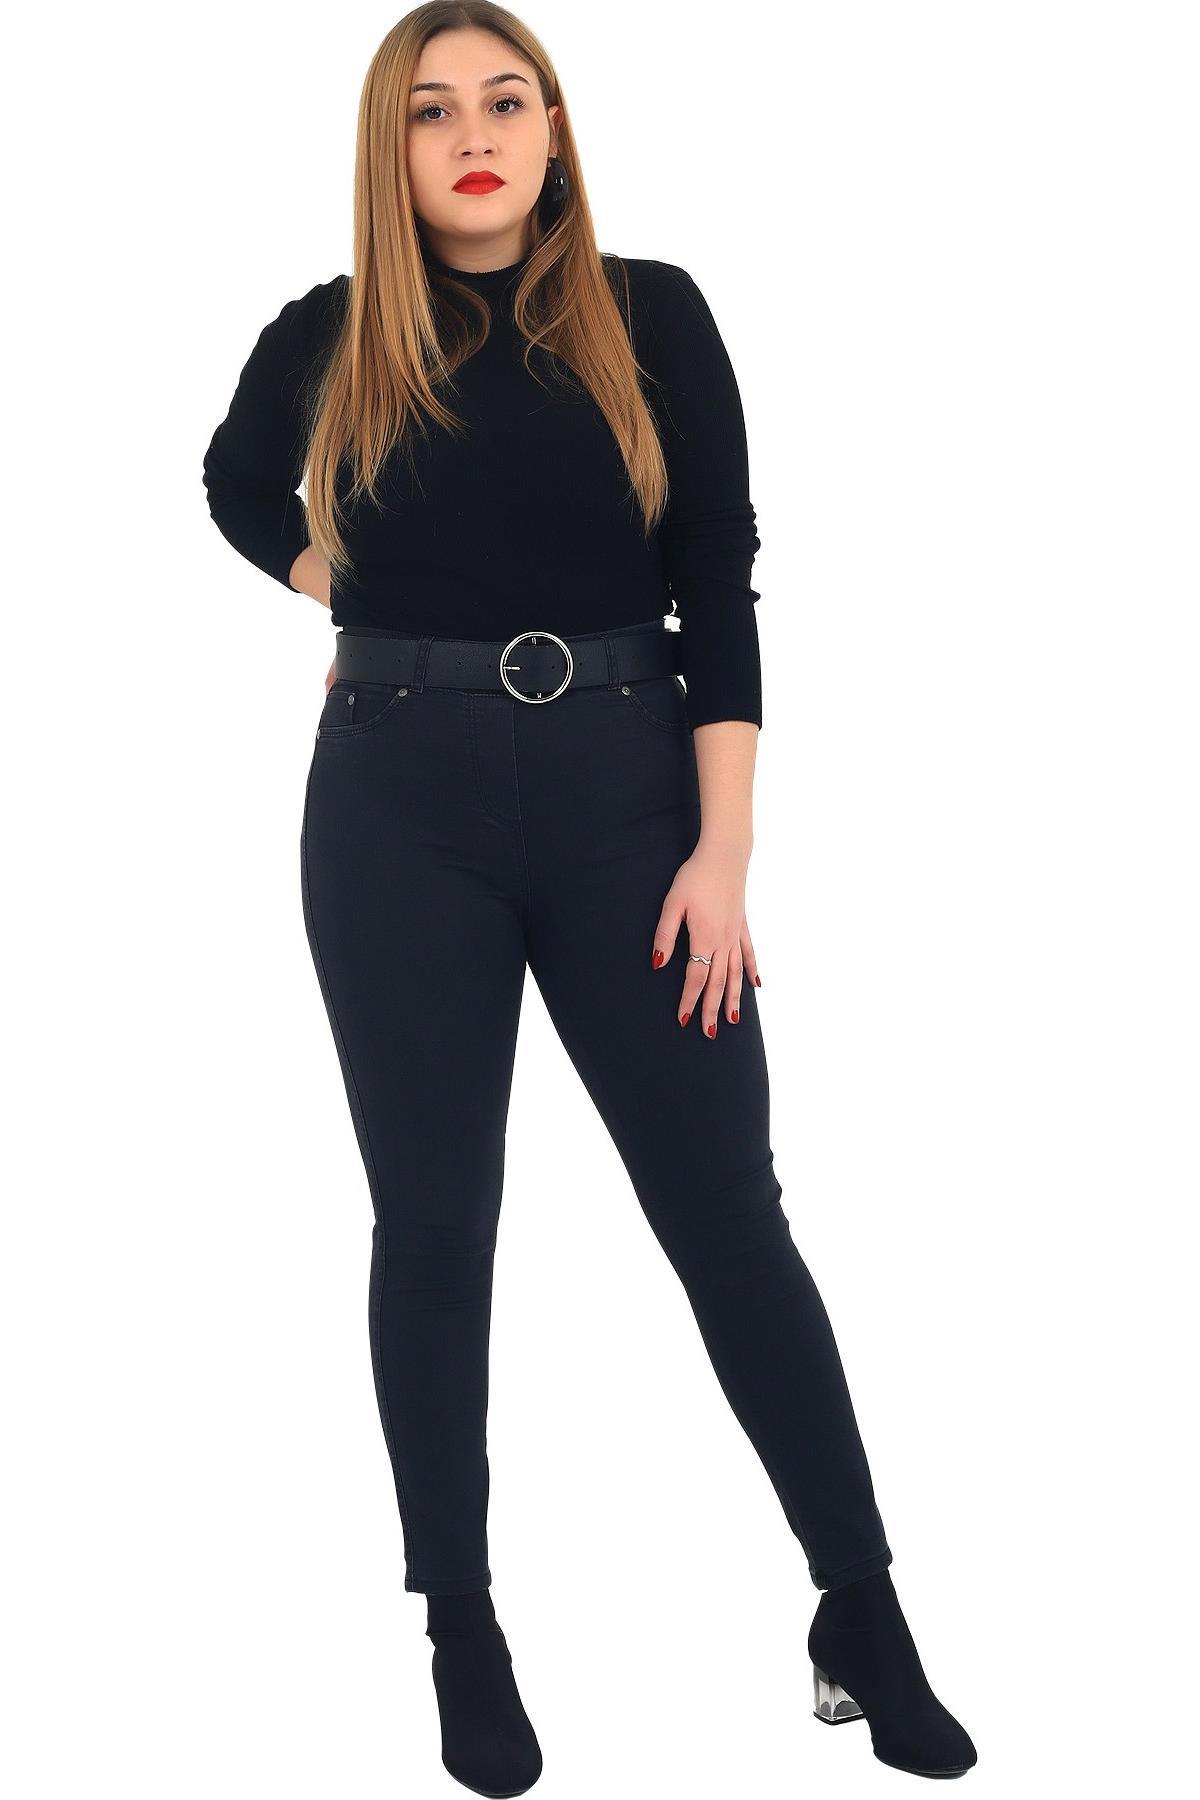 Fierte Kadın Büyük Beden Elbise Lm44031 Kadife Siyah Büyük Beden Giyim